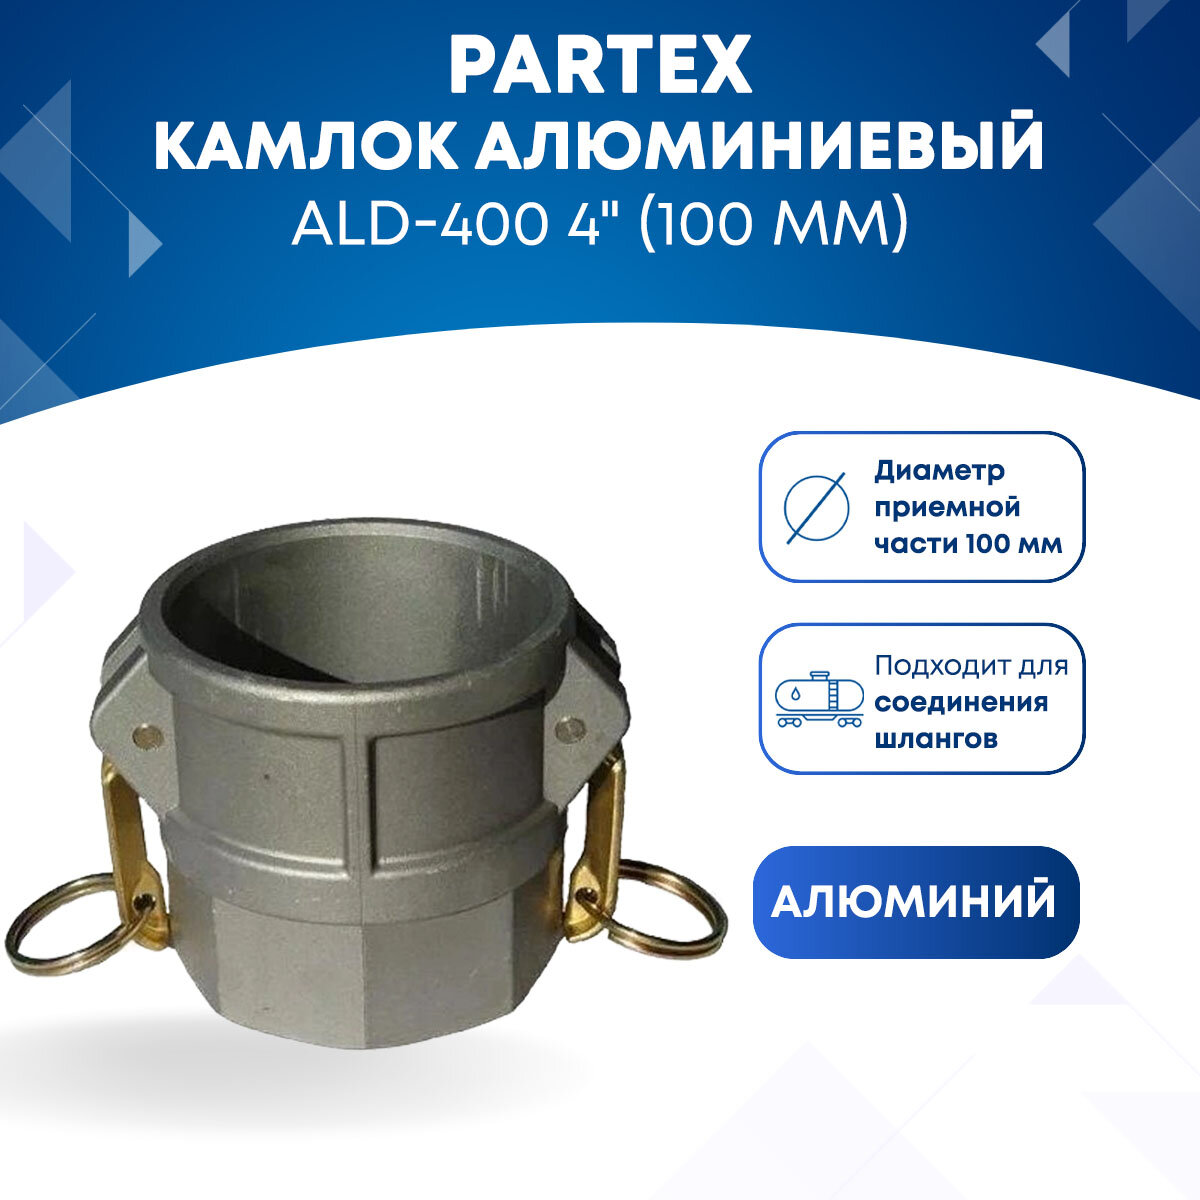 Камлок алюминиевый ALD-400 4" (100 мм)